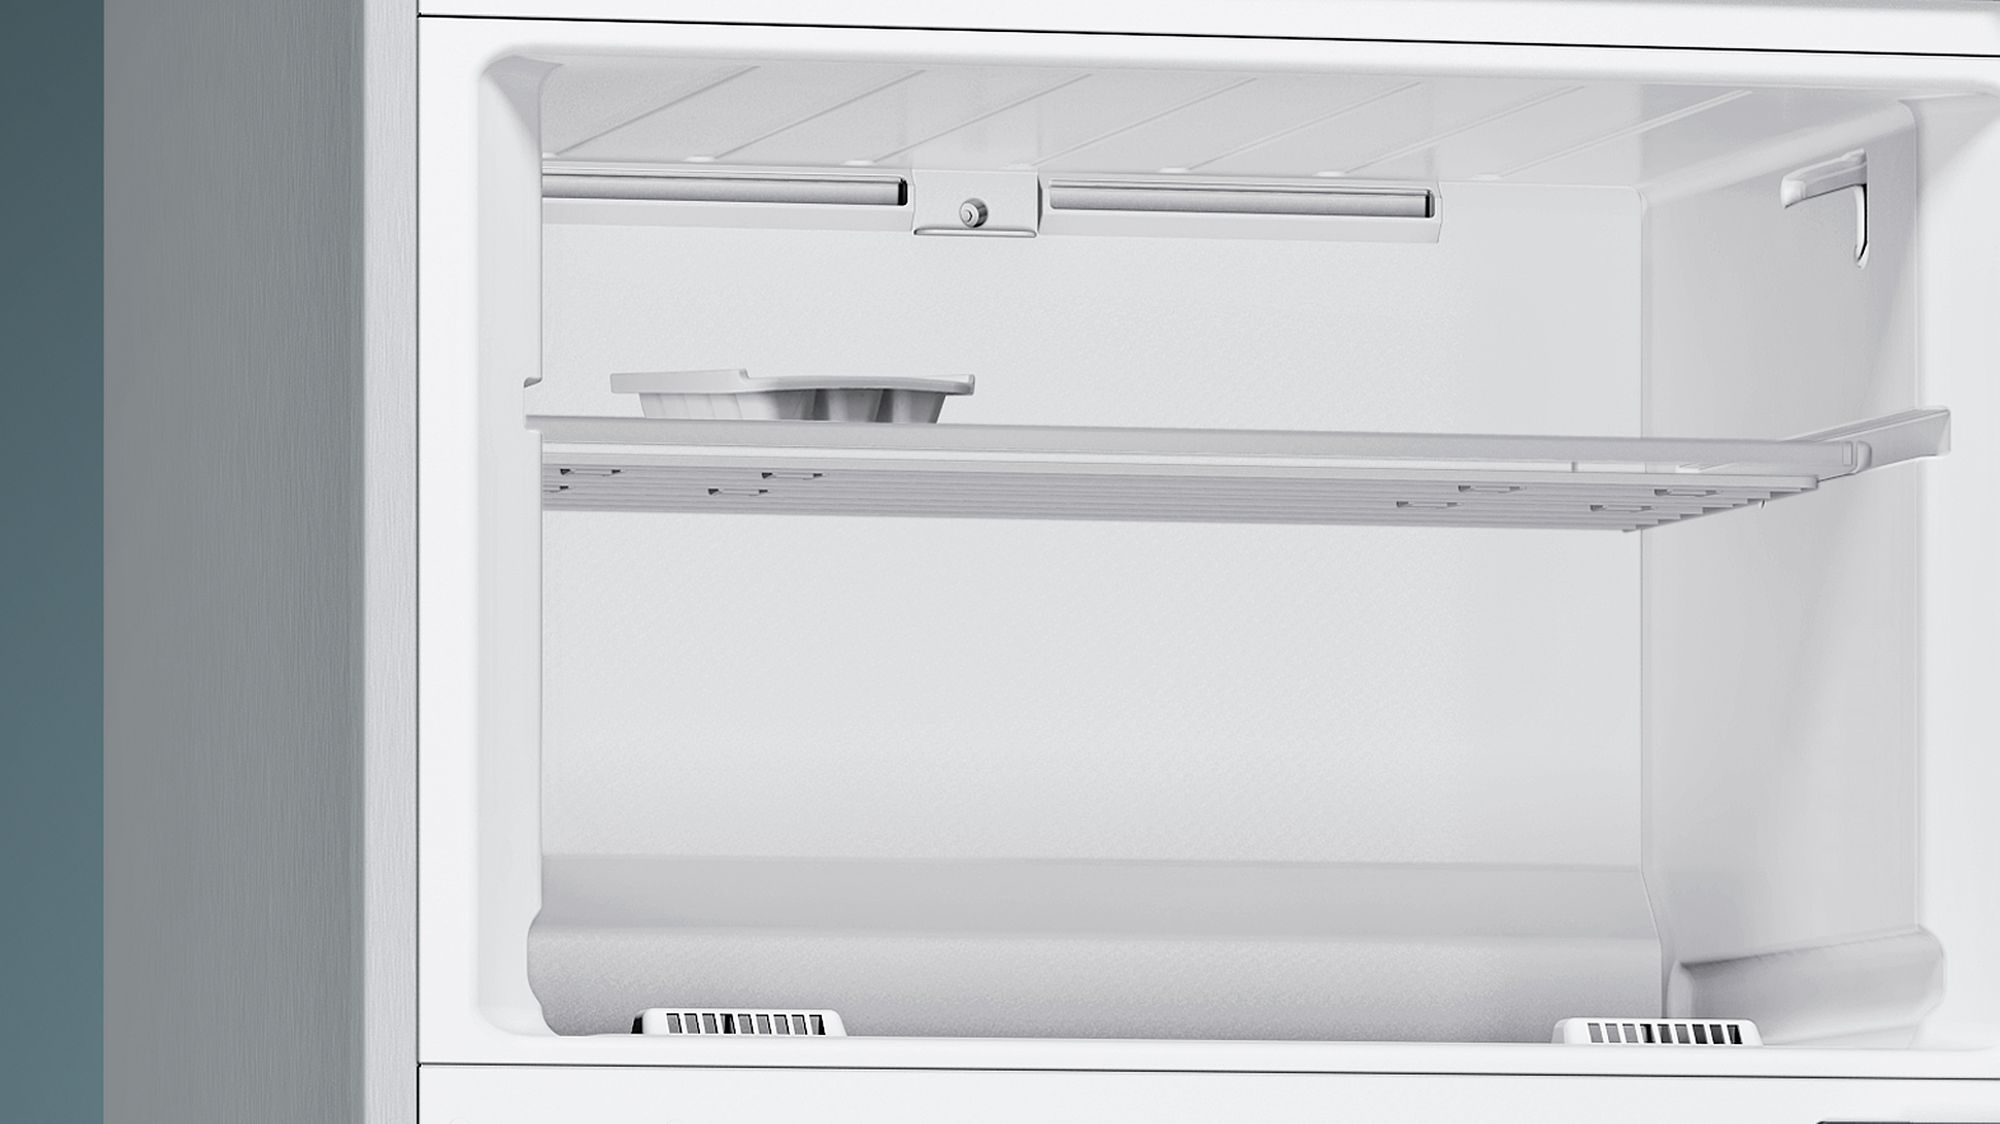 iQ300 Üstten Donduruculu Buzdolabı 186 x 70 cm Kolay temizlenebilir Inox